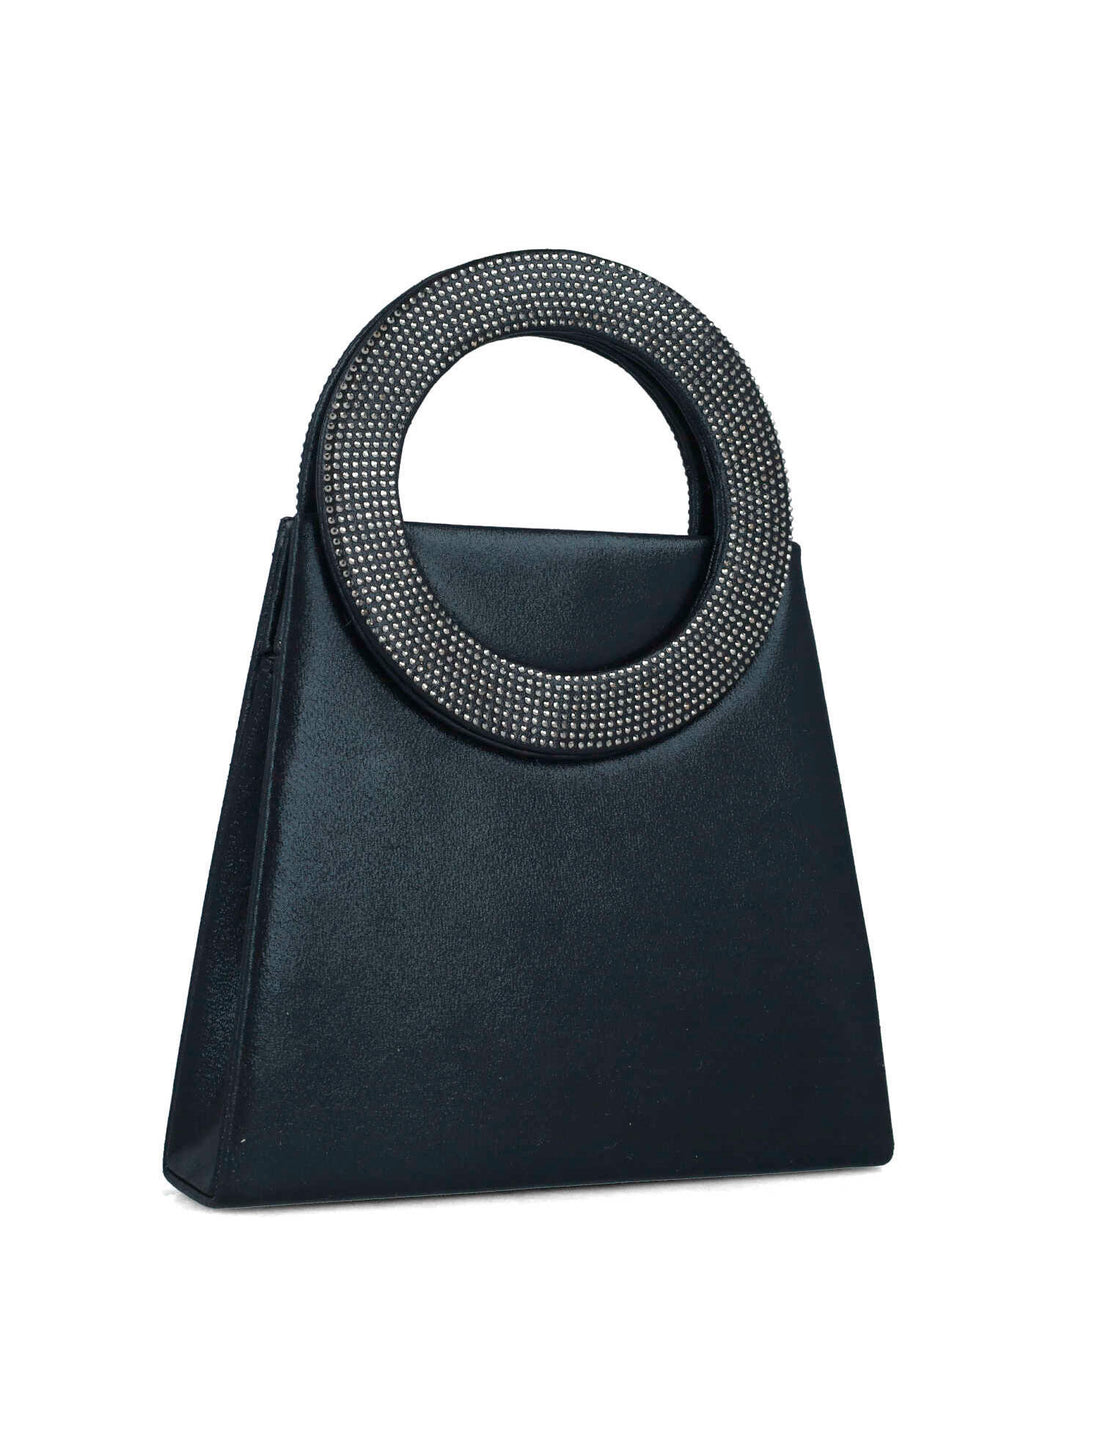 Black Handbag With Embellished Hand Strap_85508_01_02